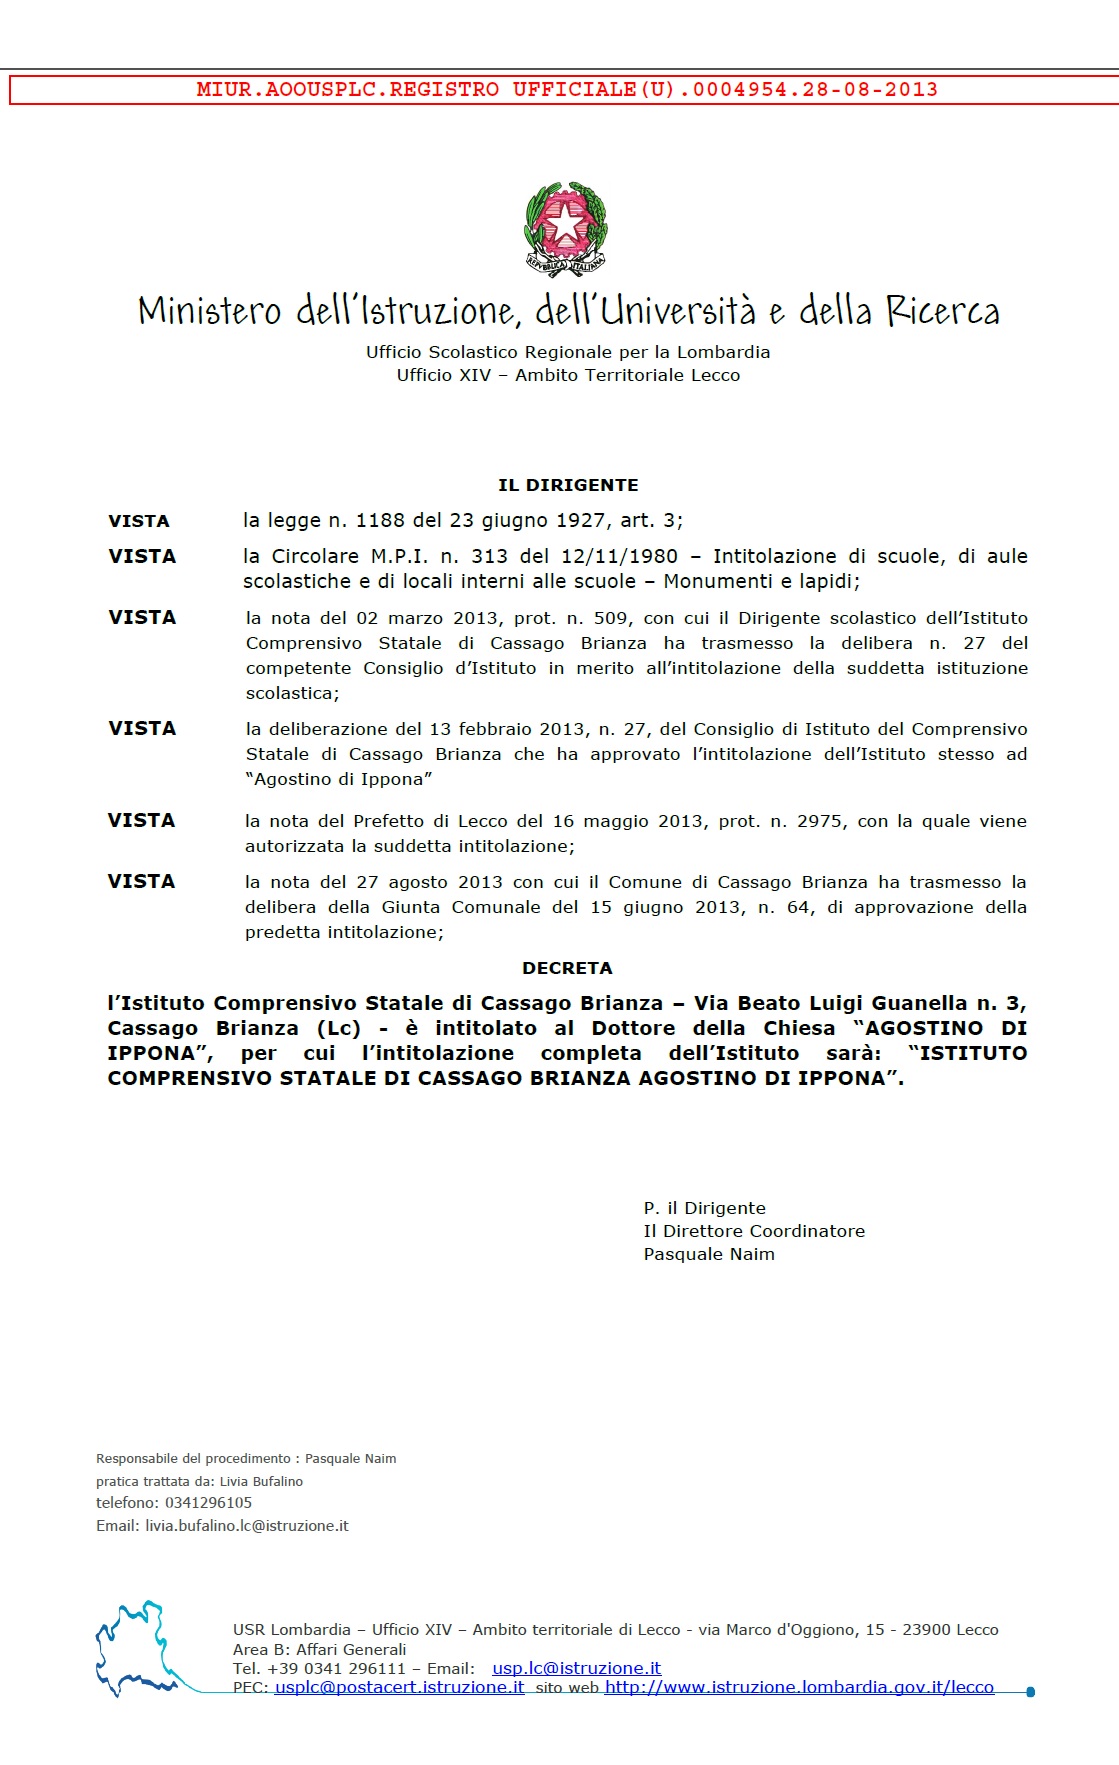 Decreto del MIUR datato 28 agosto 2013 con la titolazione dell'Istituto Comprensivo Agostino di Ippona